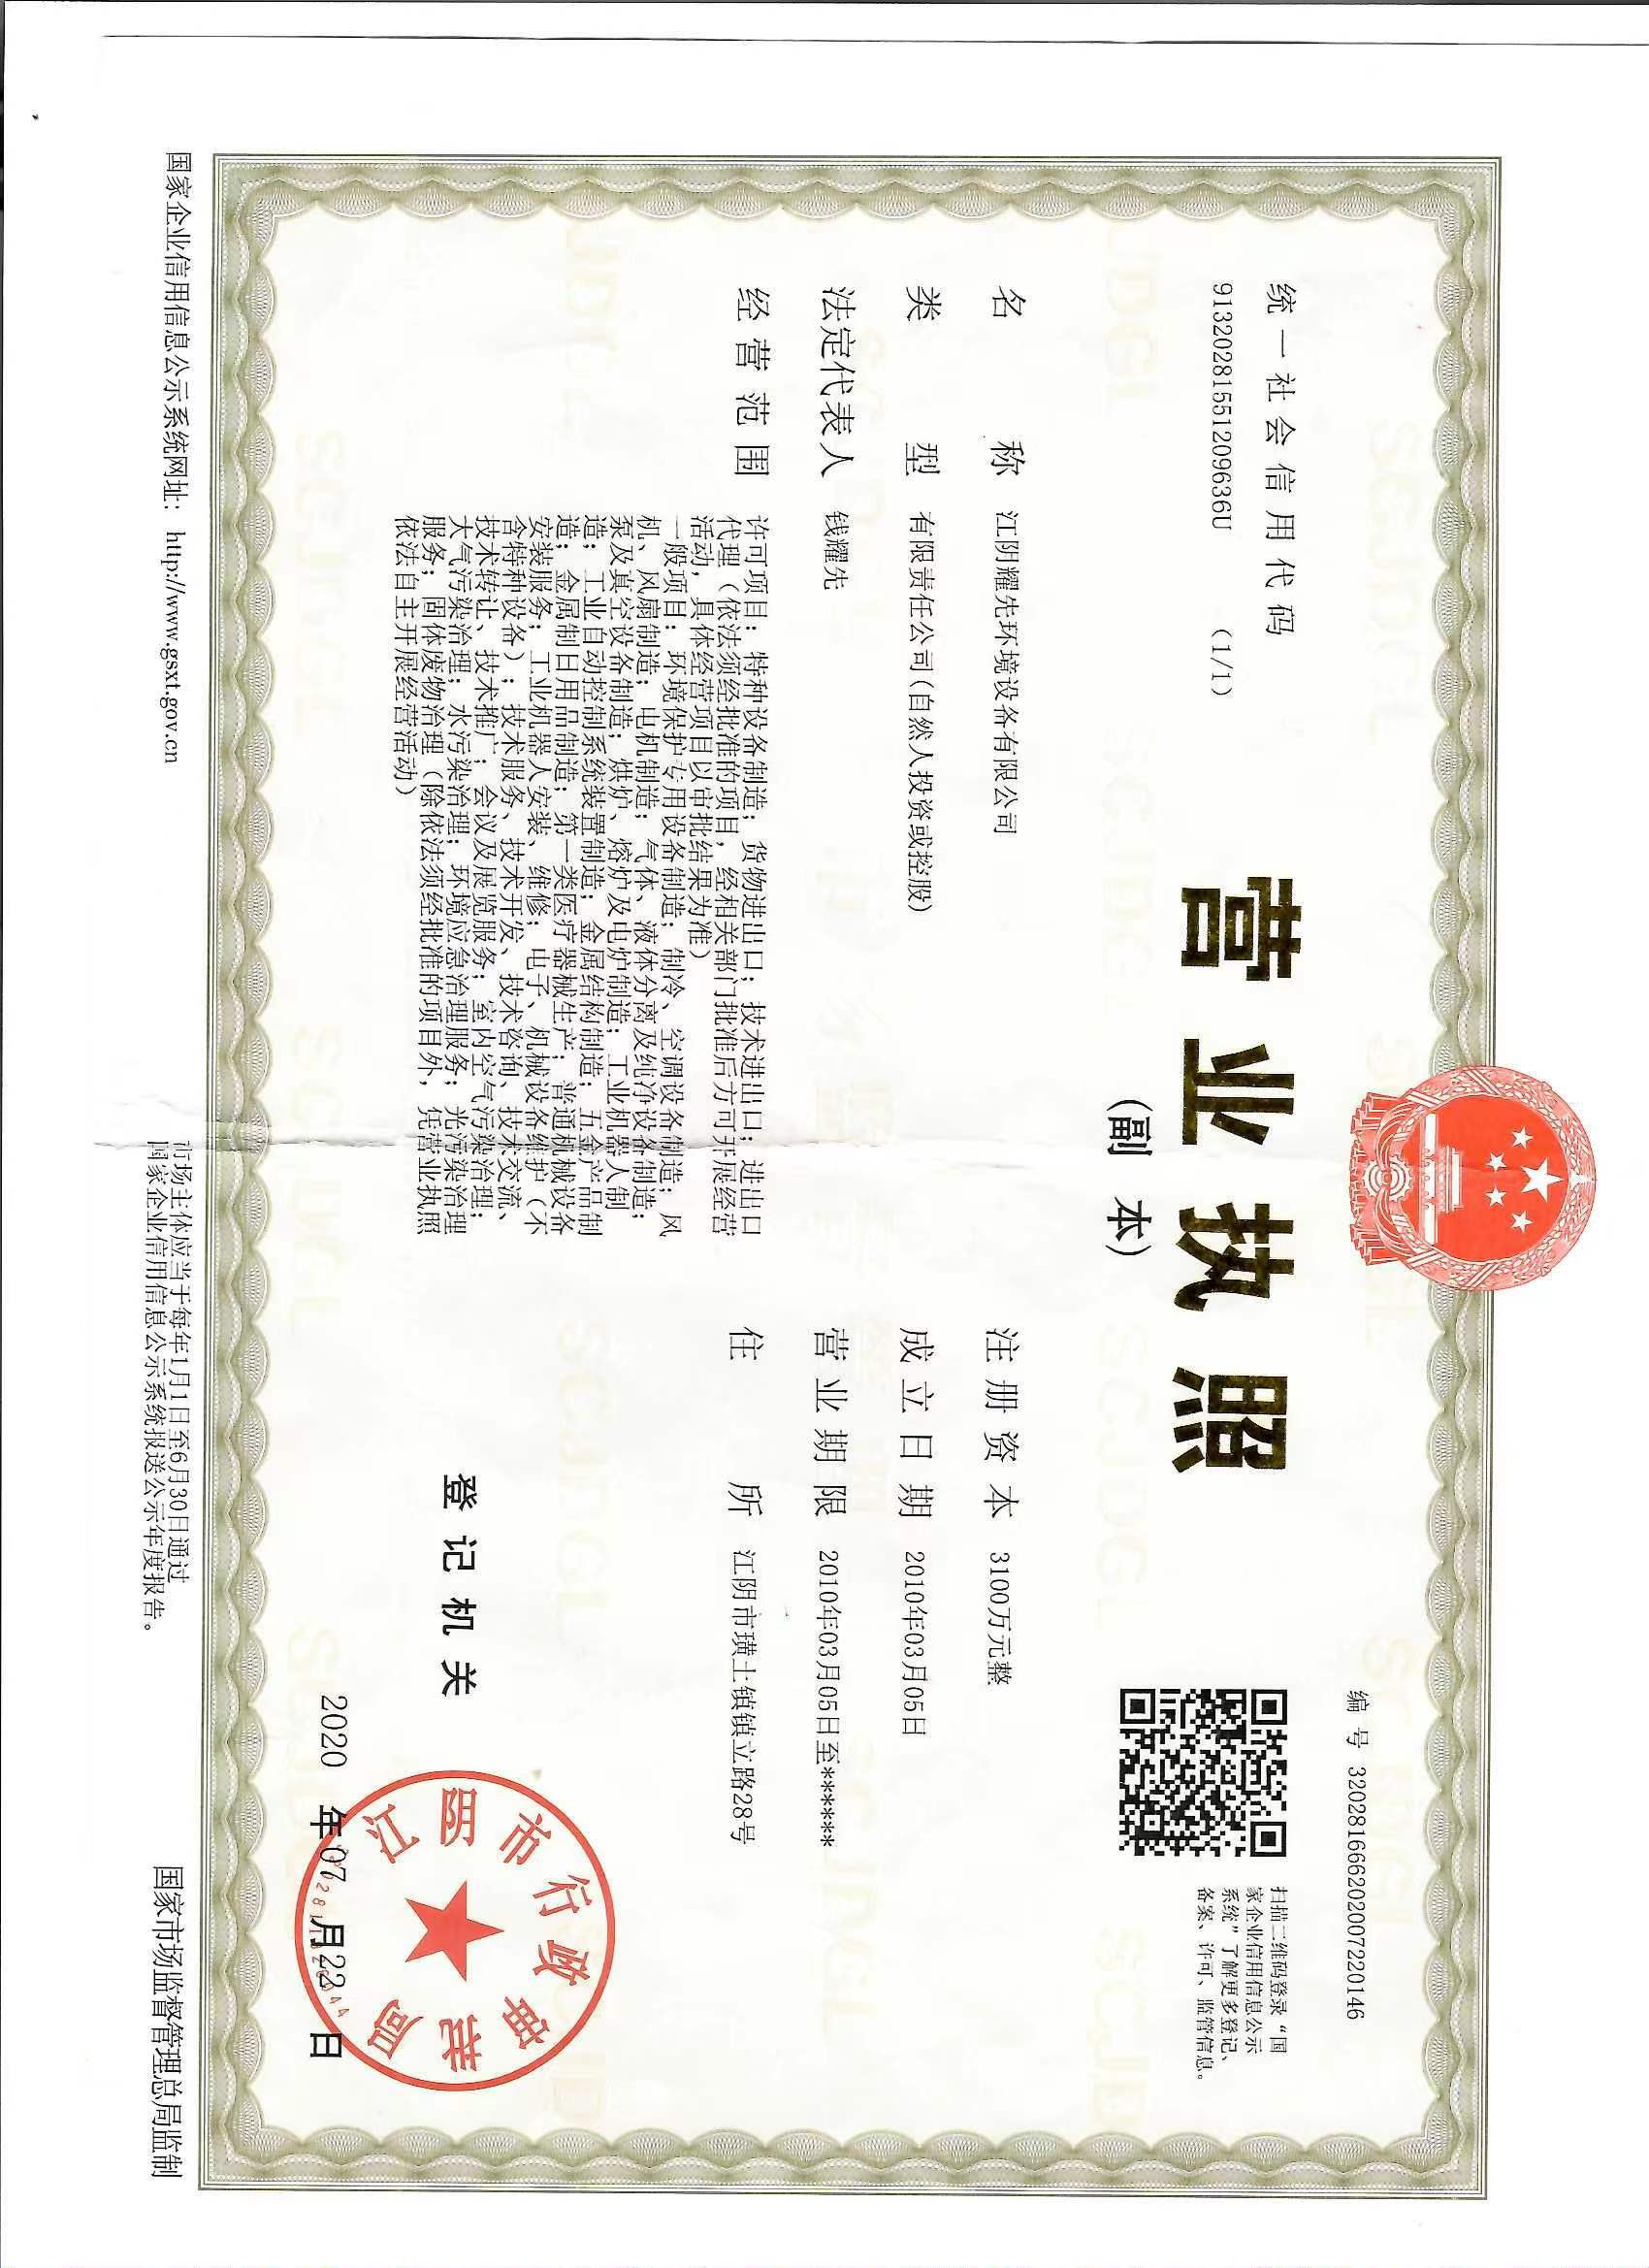 摩鑫-高新技术企业证书